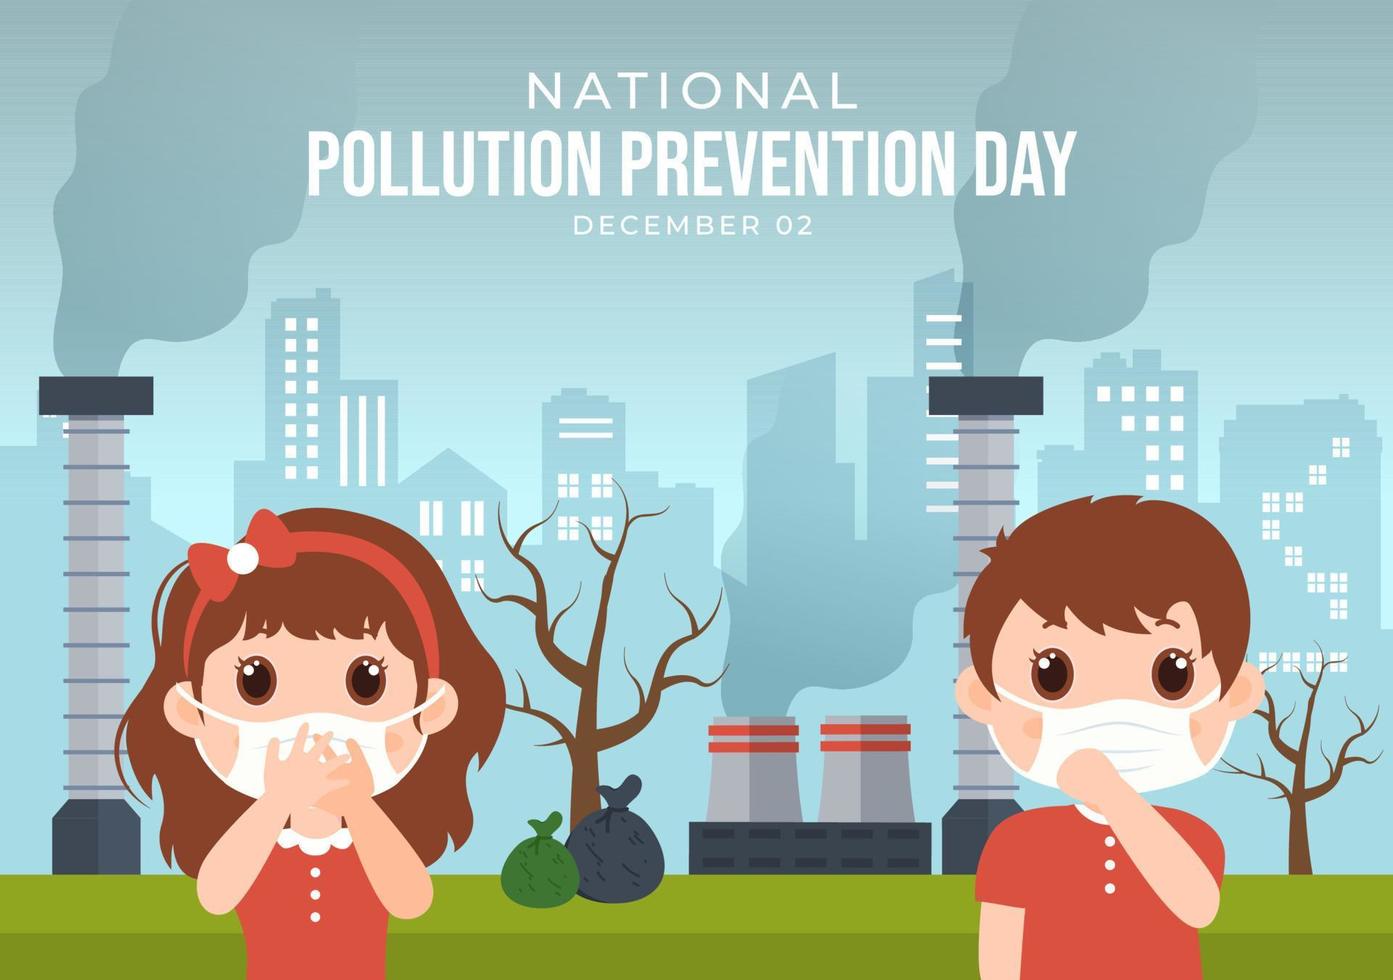 journée nationale de prévention de la pollution pour la campagne de sensibilisation sur les problèmes d'usine, de forêt ou de véhicule dans le modèle illustration plate de dessin animé dessiné à la main vecteur